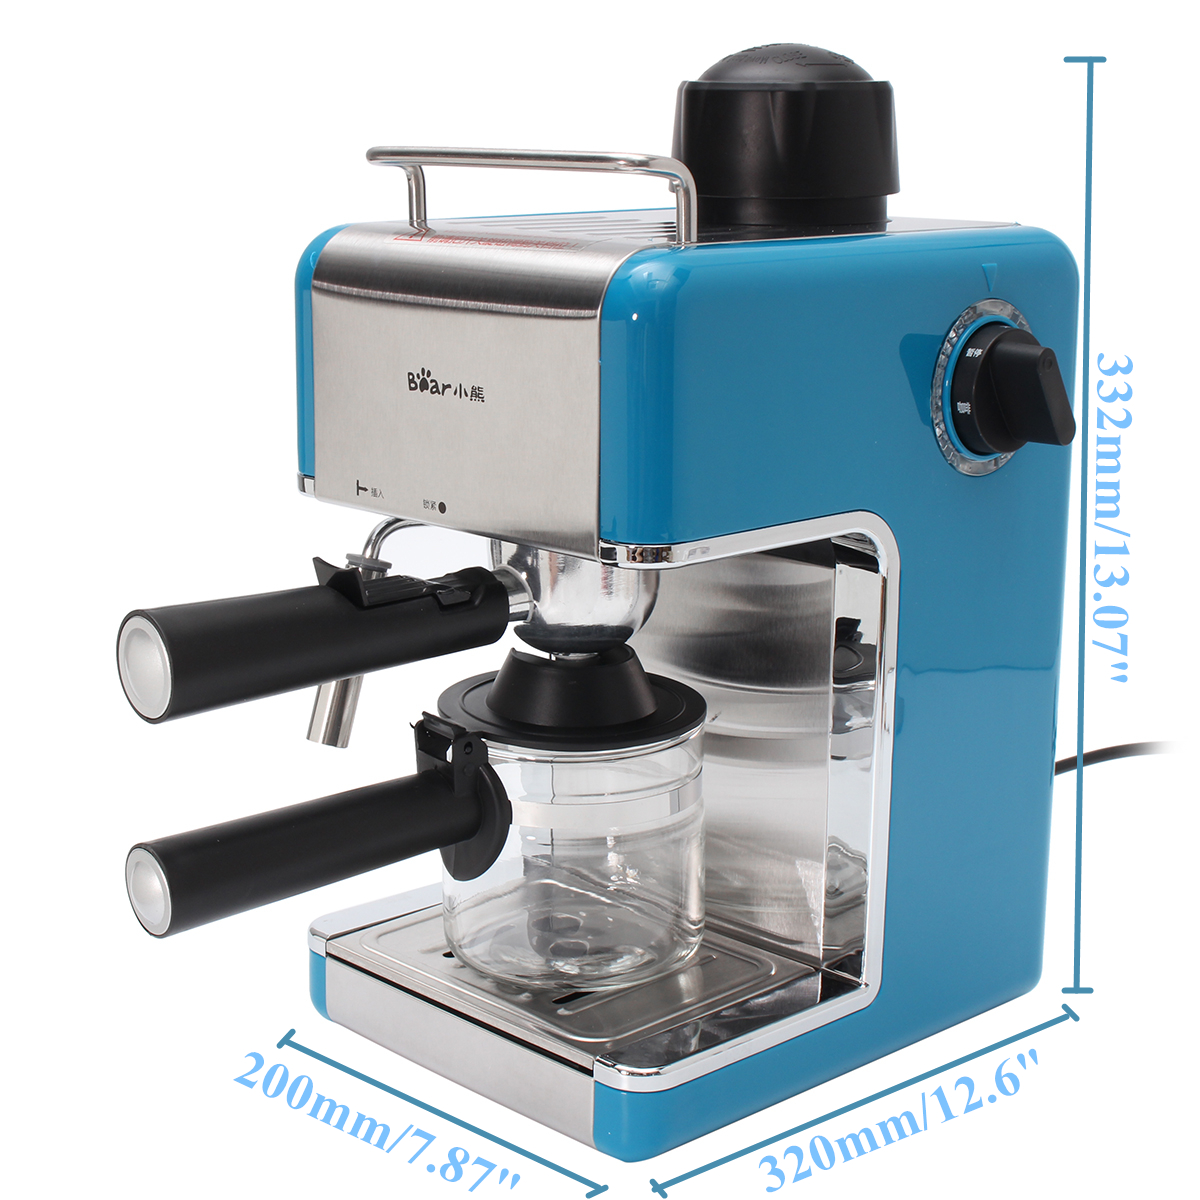 Stainless Steel Kitchen Steam Espresso Cappuccino Latte Coffee Maker Machine 19